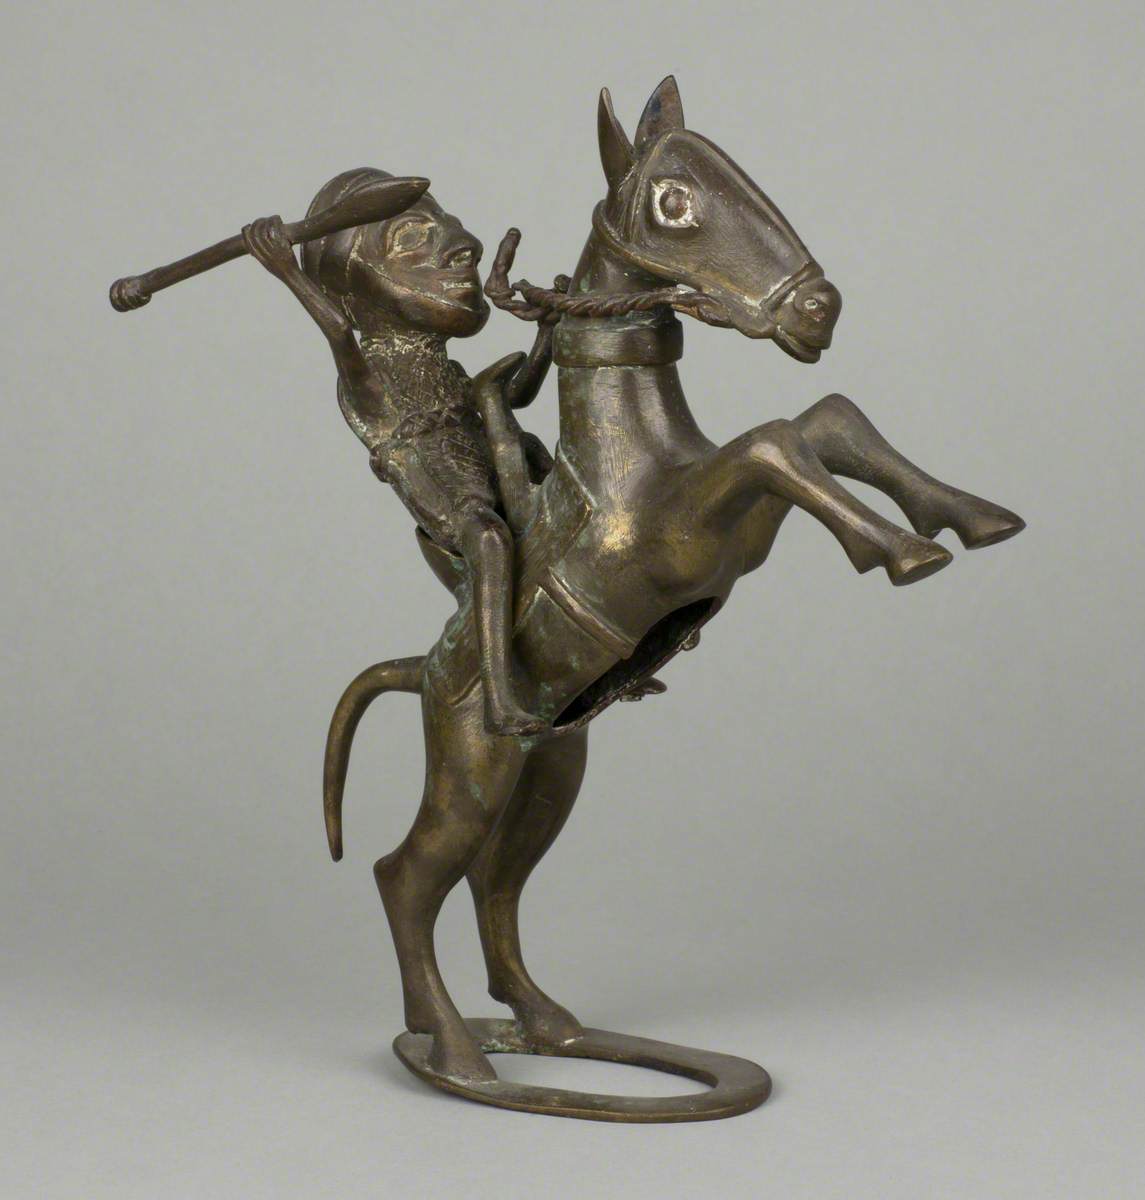 Warrior on Horseback